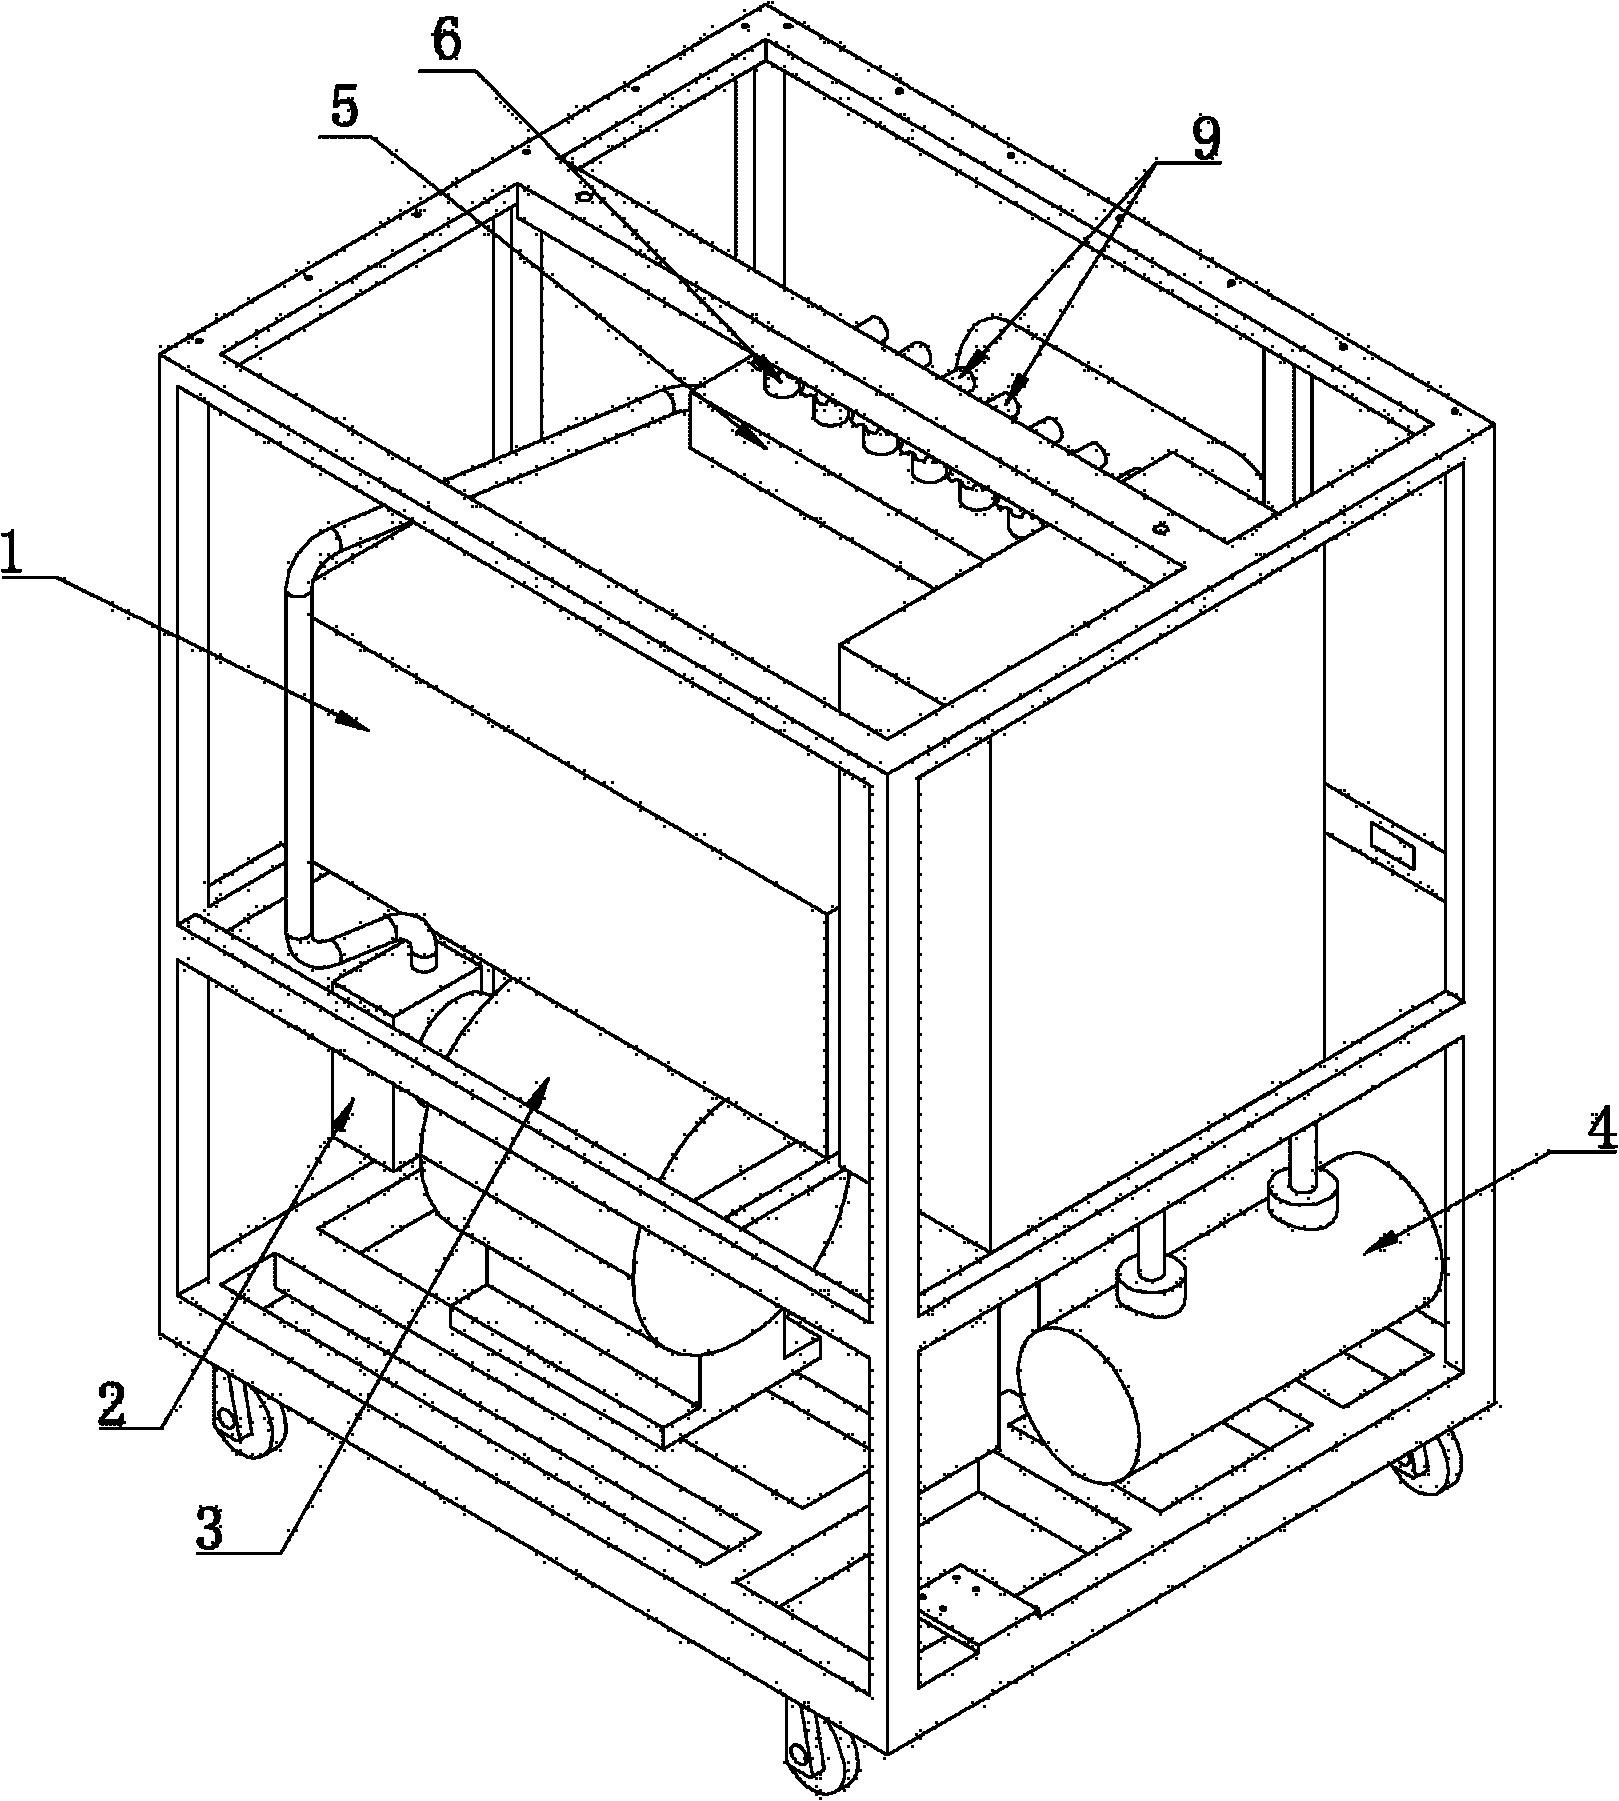 Hydraulic system applied for die hydraulic testing machine